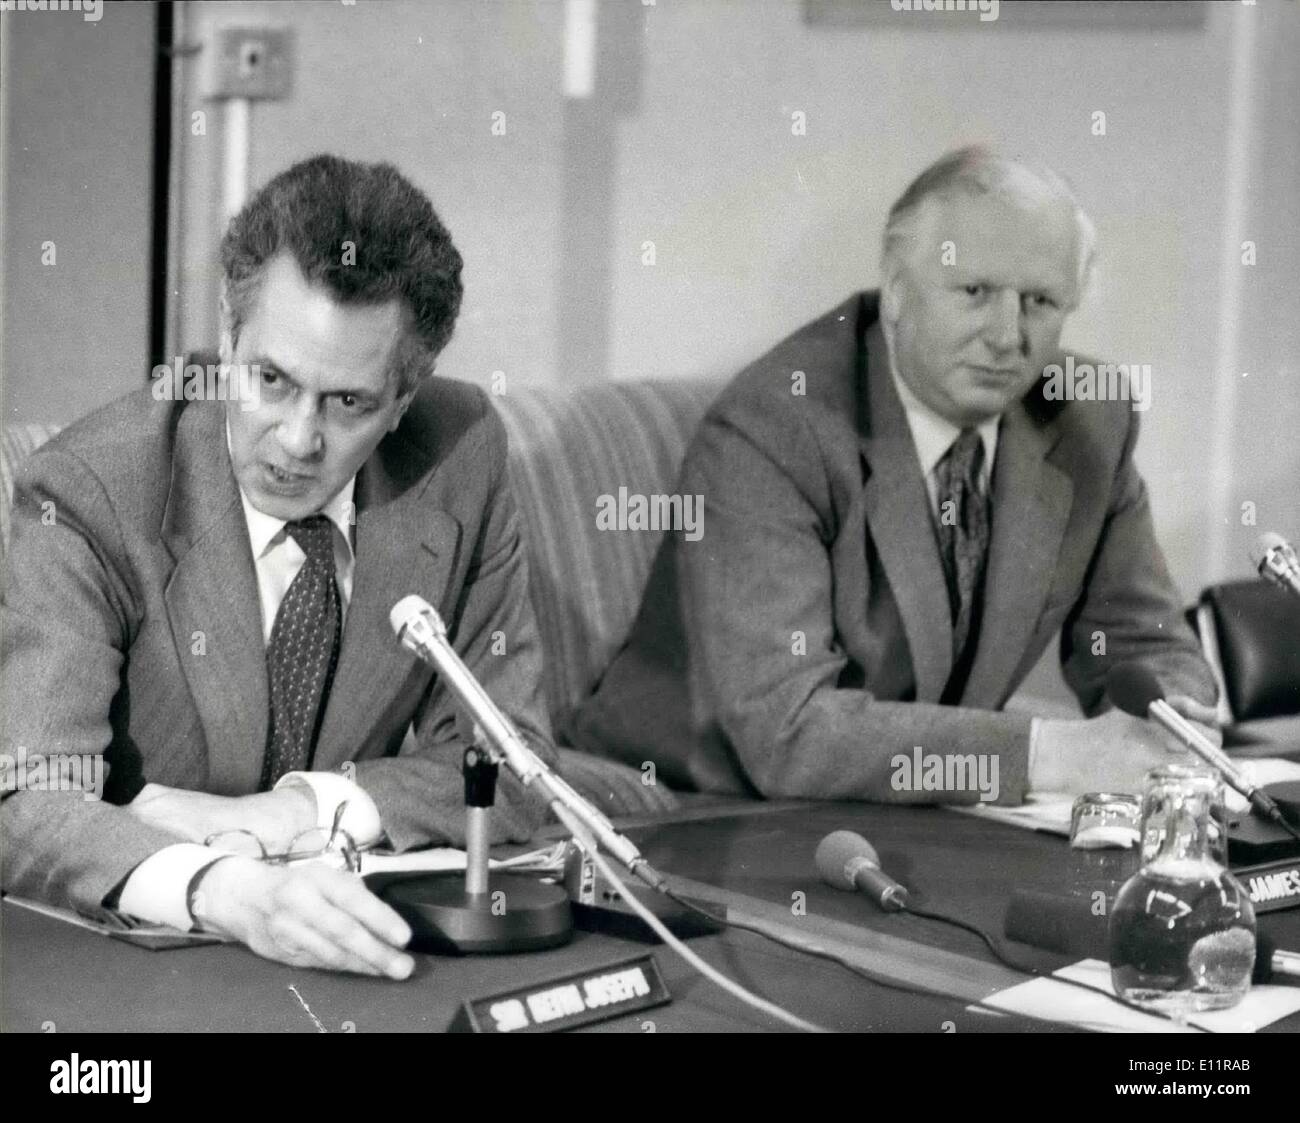 01 janvier 1980 - GRÈVE DE L'ACIER CHEF RENCONTREZ SIR KEITH JOSEPH M. AIDE À L'AVANT LE MINISTÈRE DE L'INDUSTRIE À LONDRES Nouvelle tentative de régler les trois semaines de grève de l'acier sera faite la semaine prochaine, lorsque les dirigeants syndicaux et British Steel Corporation management devraient rouvrir des négociations directes, les dirigeants et les ministres de l'Union européenne d'aujourd'hui a eu des entretiens au Ministère de l'industrie de Londres. PHOTO MONTRE :- Sir Keith Zaseph, secrétaire de l'industrie et M. avant.L'emploi Secrétaire après leur réunion aujourd'hui avec les dirigeants des syndicats de l'acier en grève. Banque D'Images